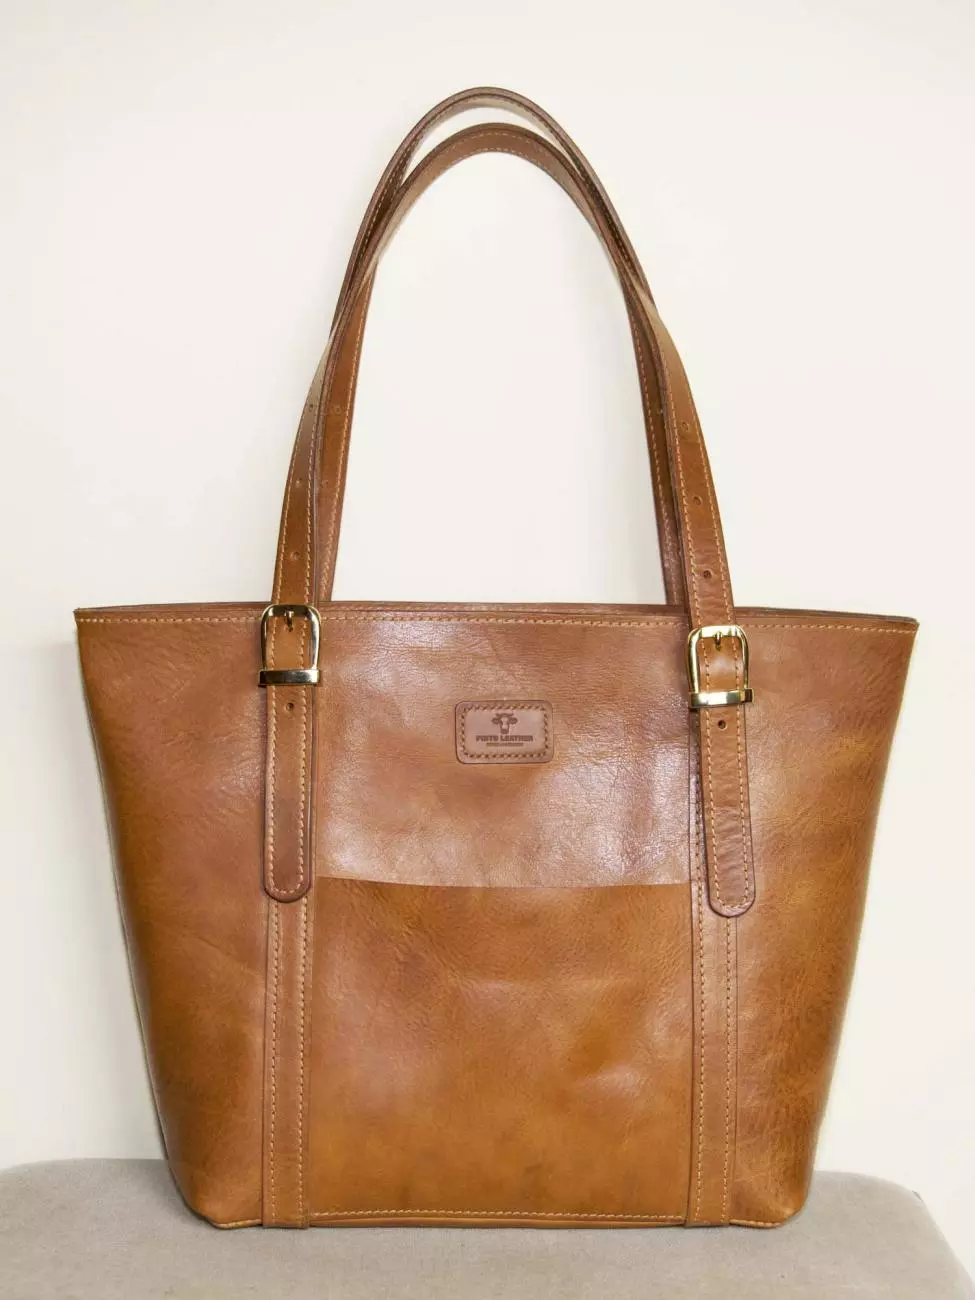 1 - Woman bag